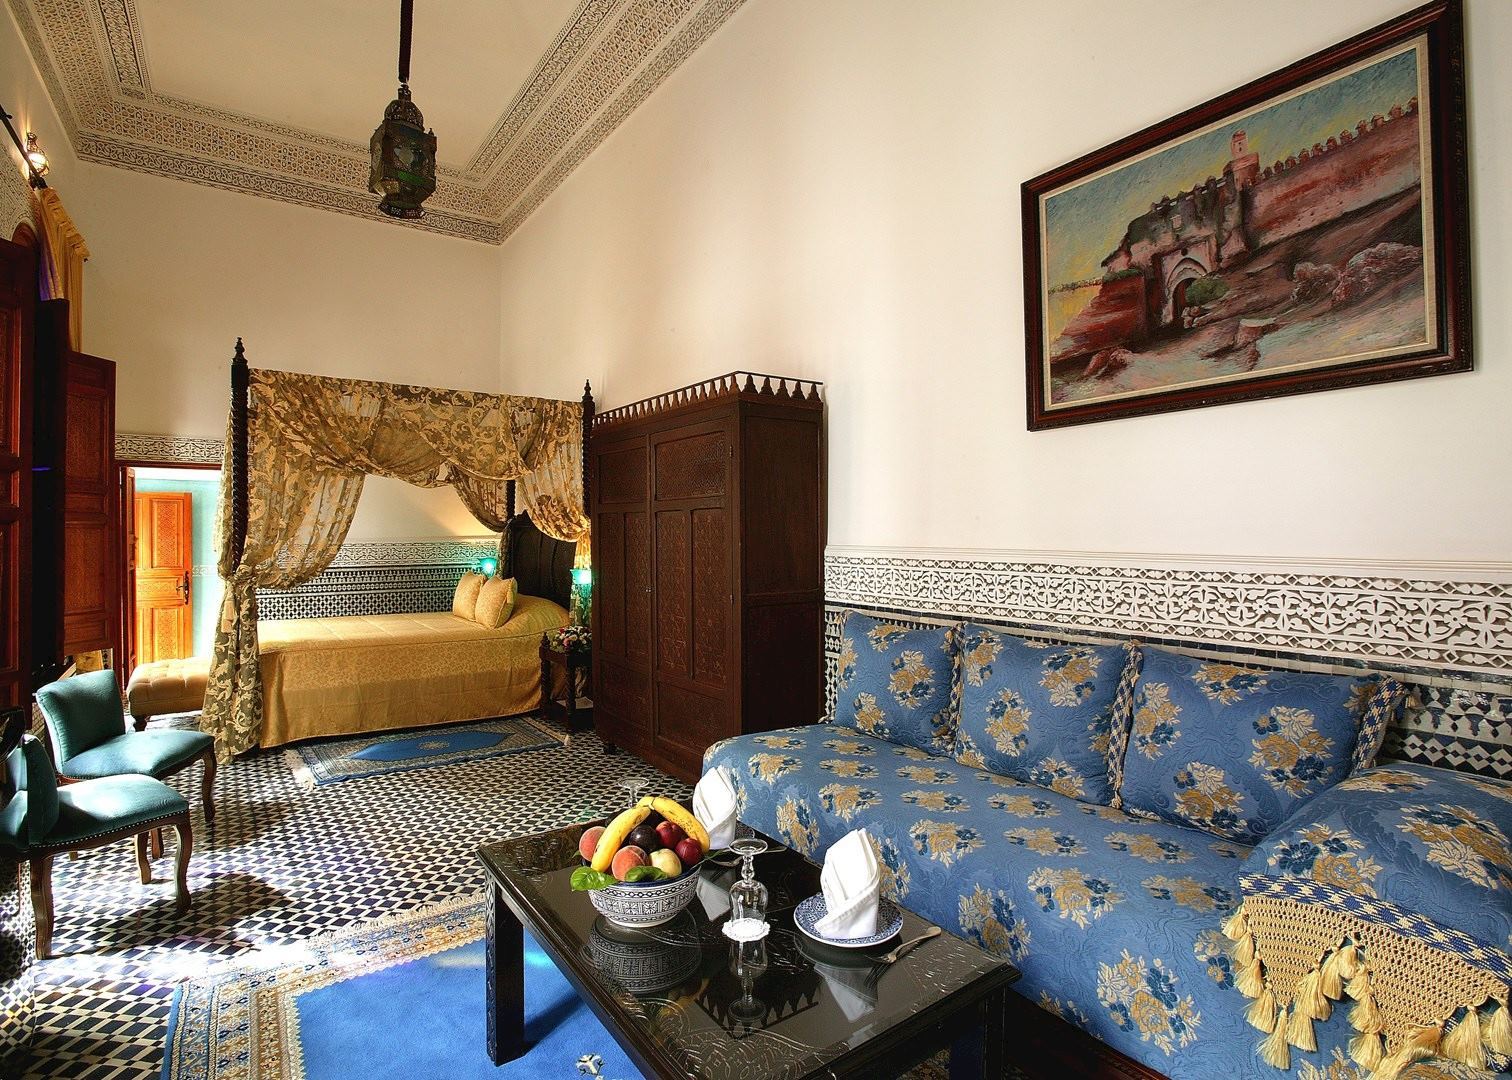 Riad Maison Bleue - Fes - Morocco